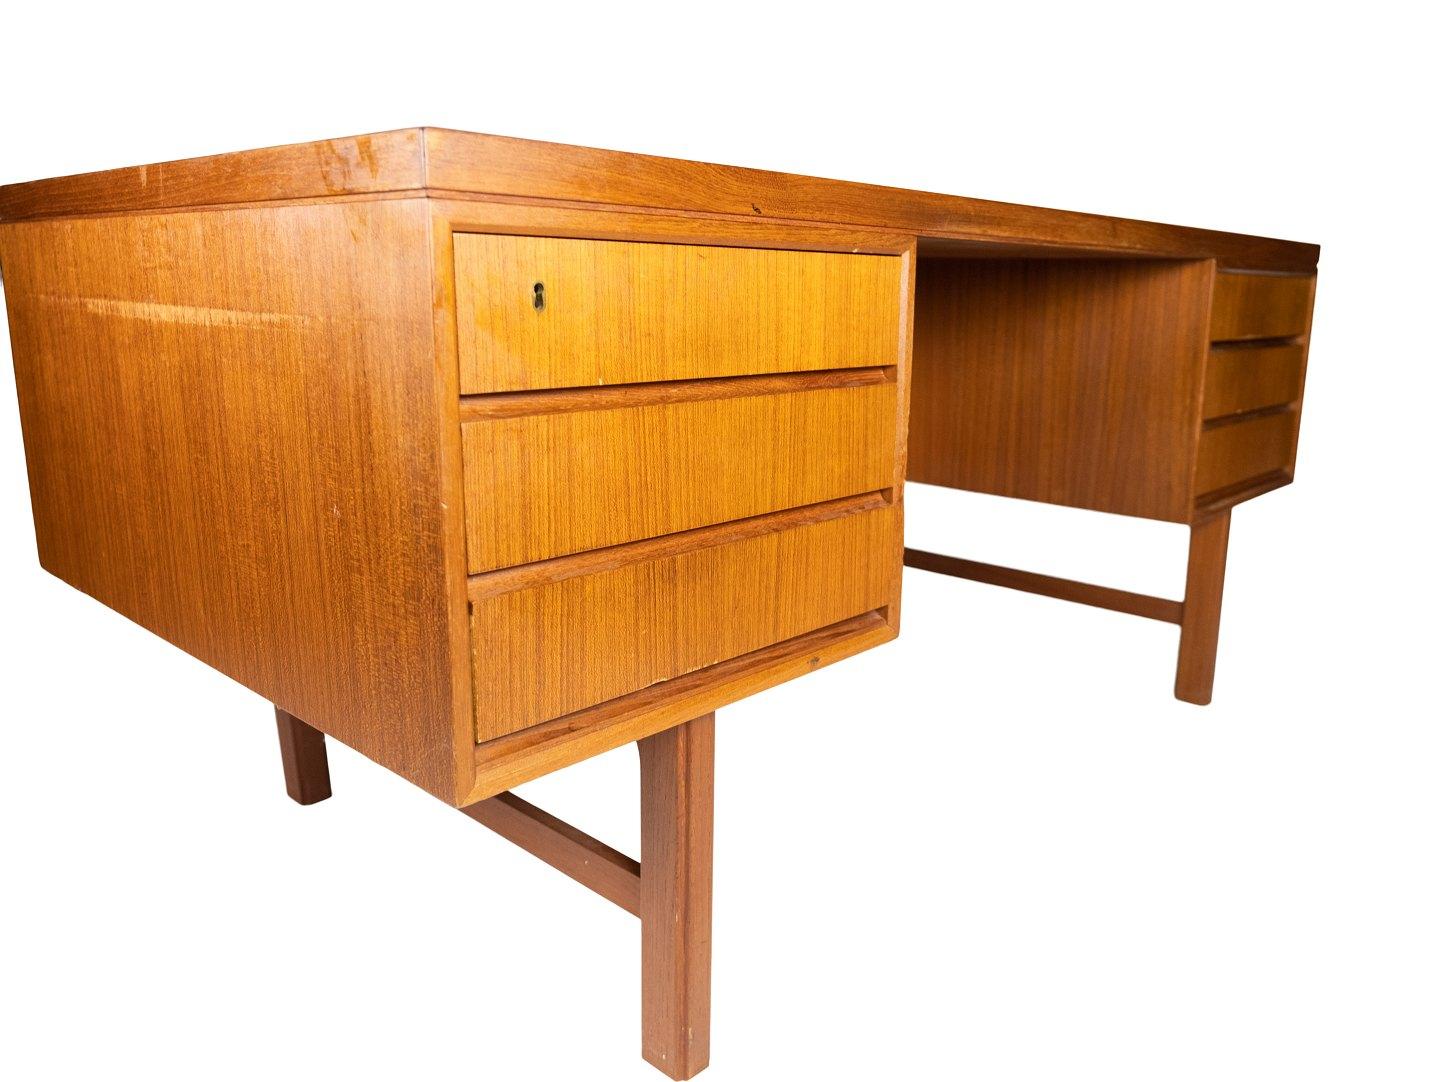 Le bureau en teck, conçu par Design/One Junior dans les années 1960, est un exemple marquant du mobilier danois de l'époque.

Avec son design caractéristique en bois de teck, le bureau dégage une atmosphère chaleureuse et accueillante qui s'intègre